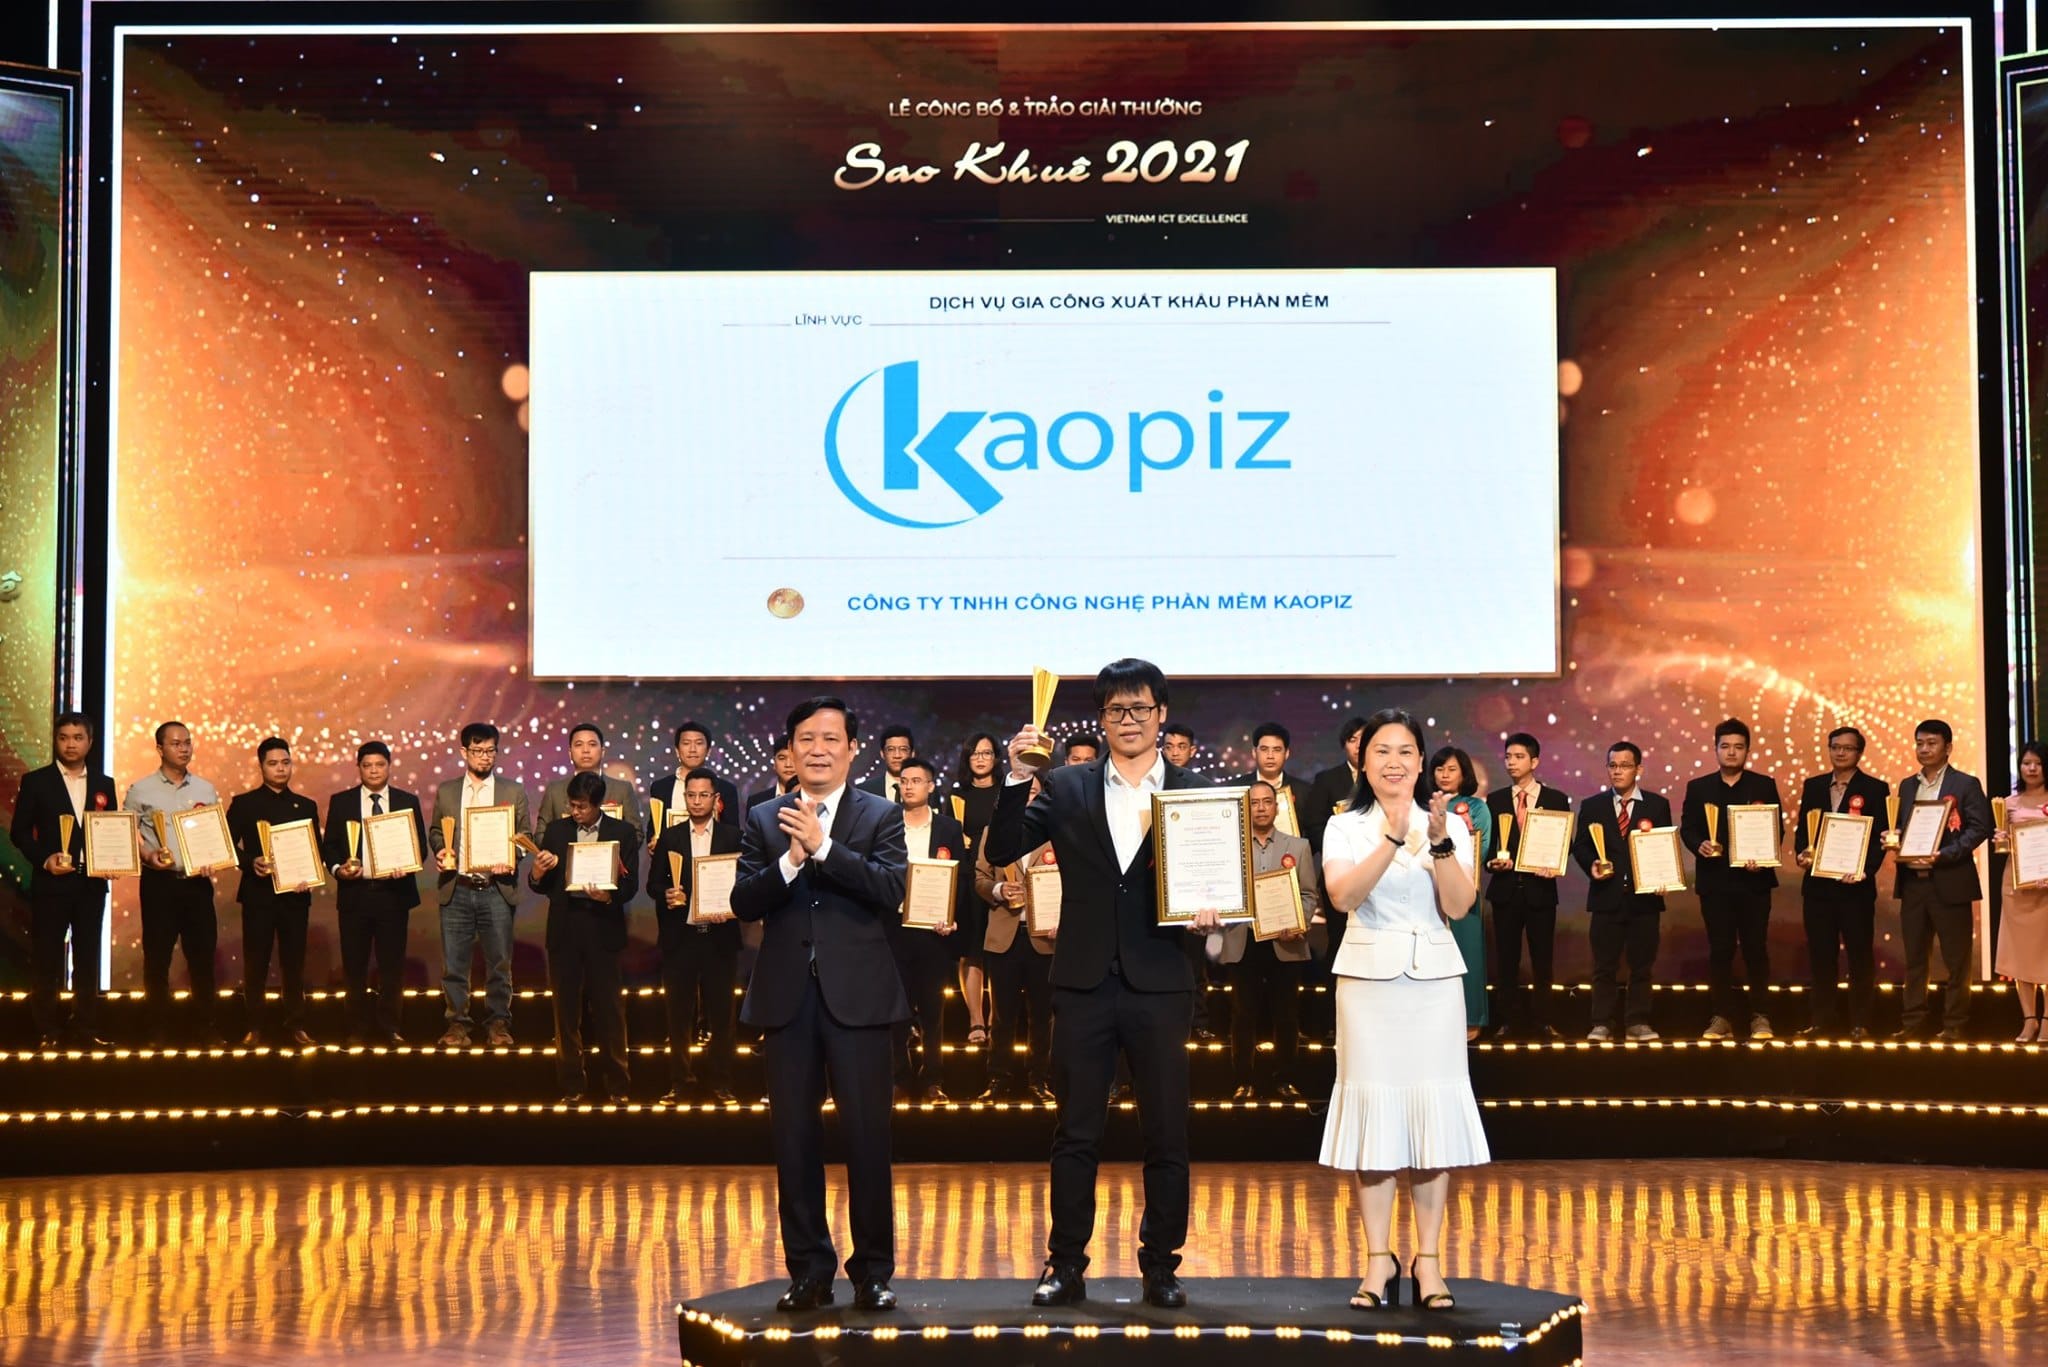 Sao Khue award of Kaopiz 2021